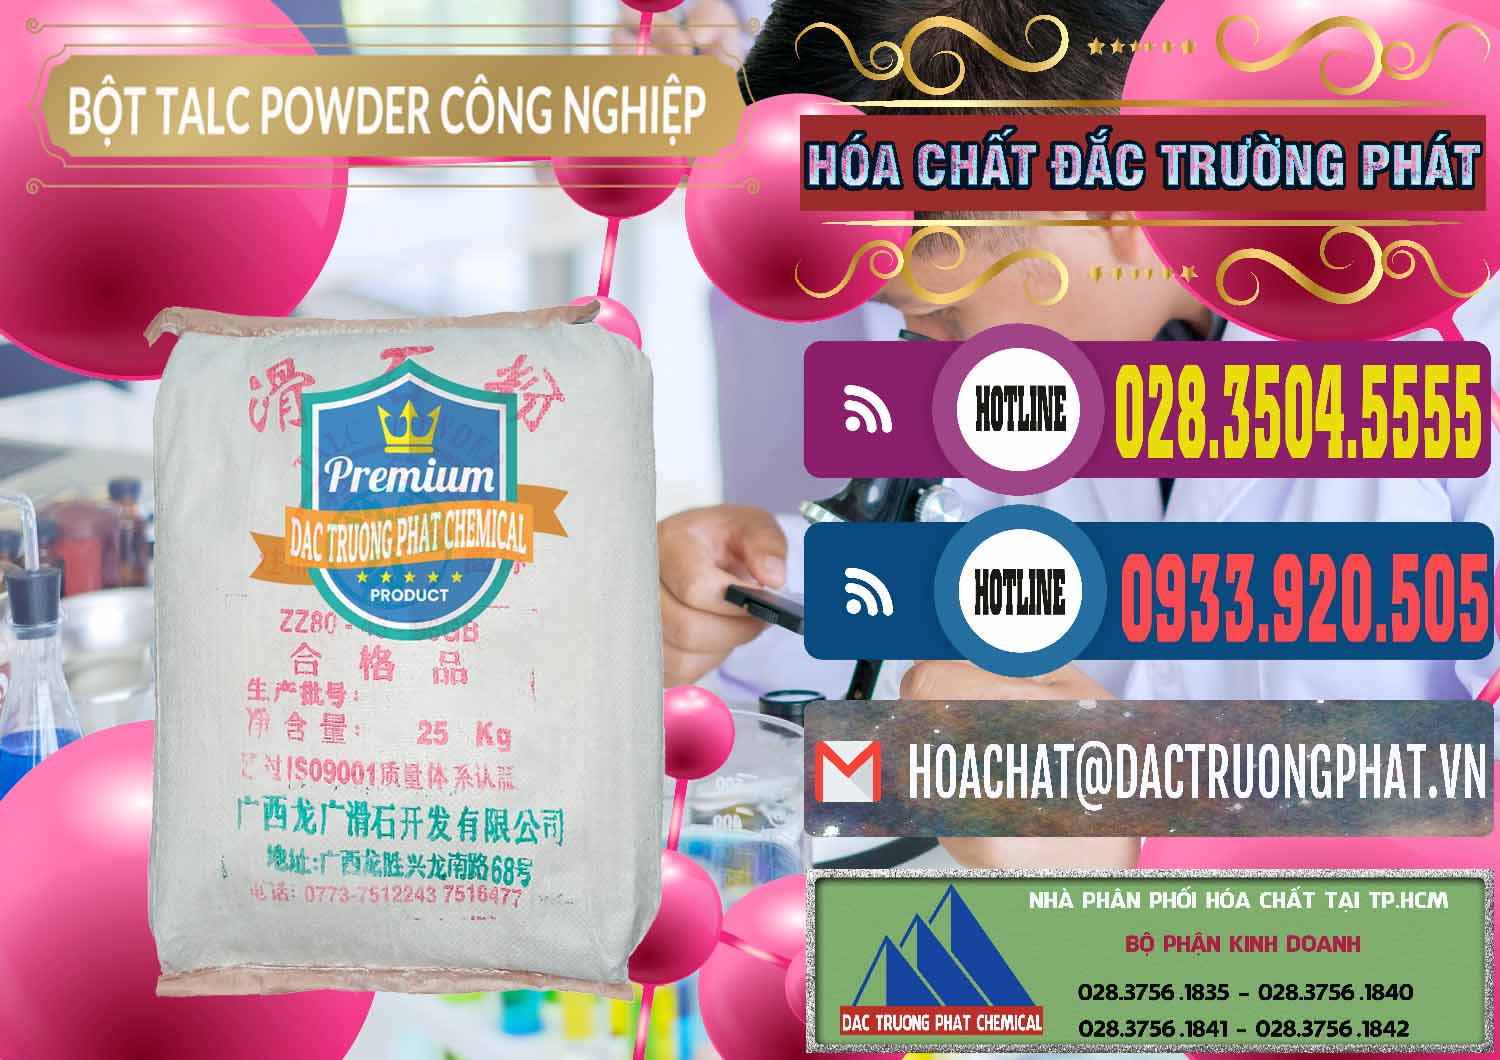 Cty phân phối _ bán Bột Talc Powder Công Nghiệp Trung Quốc China - 0037 - Công ty chuyên cung ứng và phân phối hóa chất tại TP.HCM - muabanhoachat.com.vn